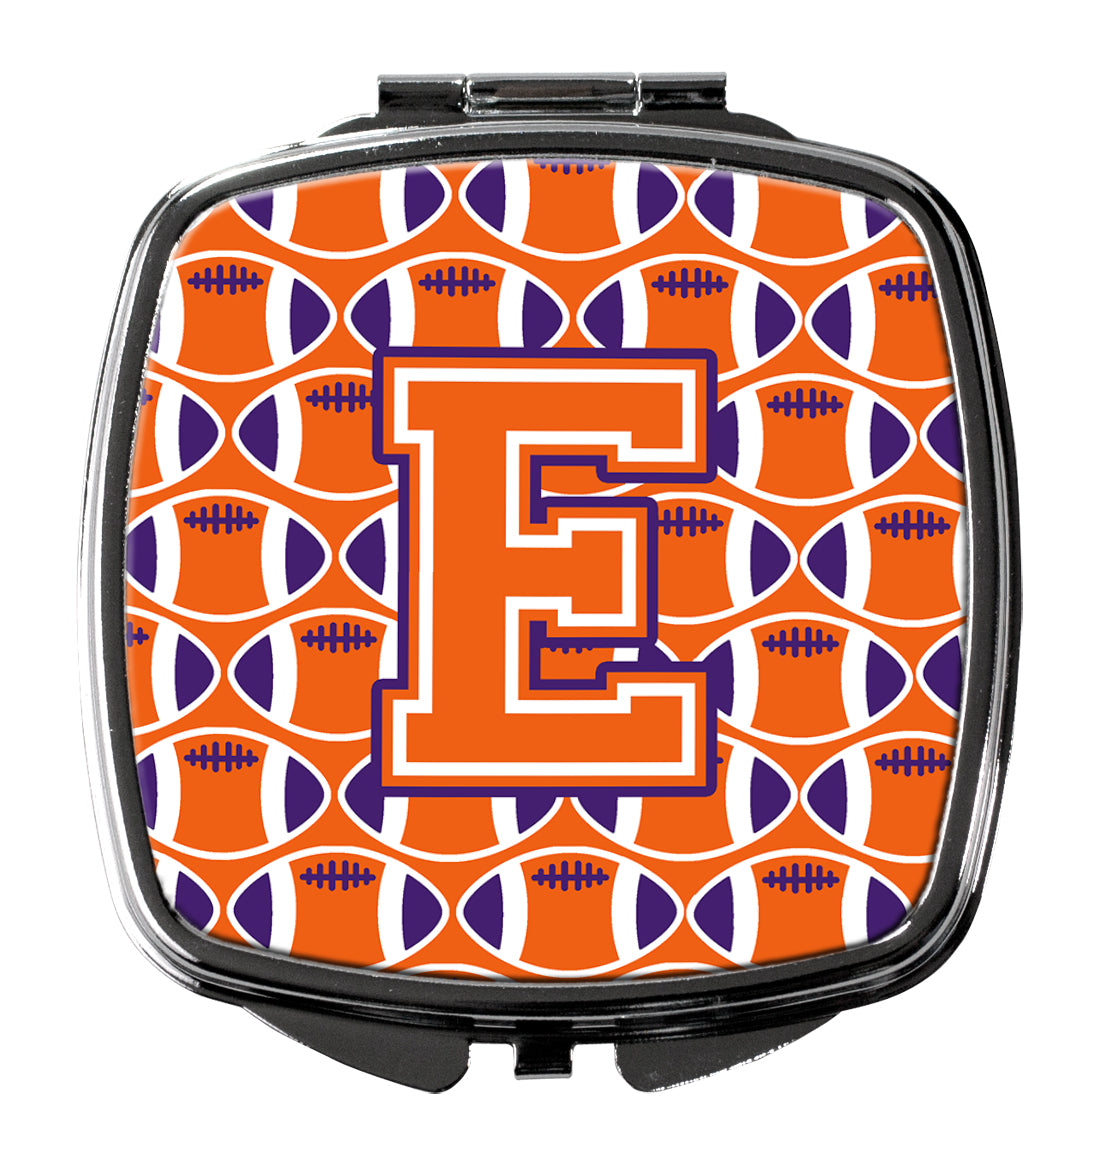 Letter E Football Orange, White and Regalia Compact Mirror CJ1072-ESCM  the-store.com.